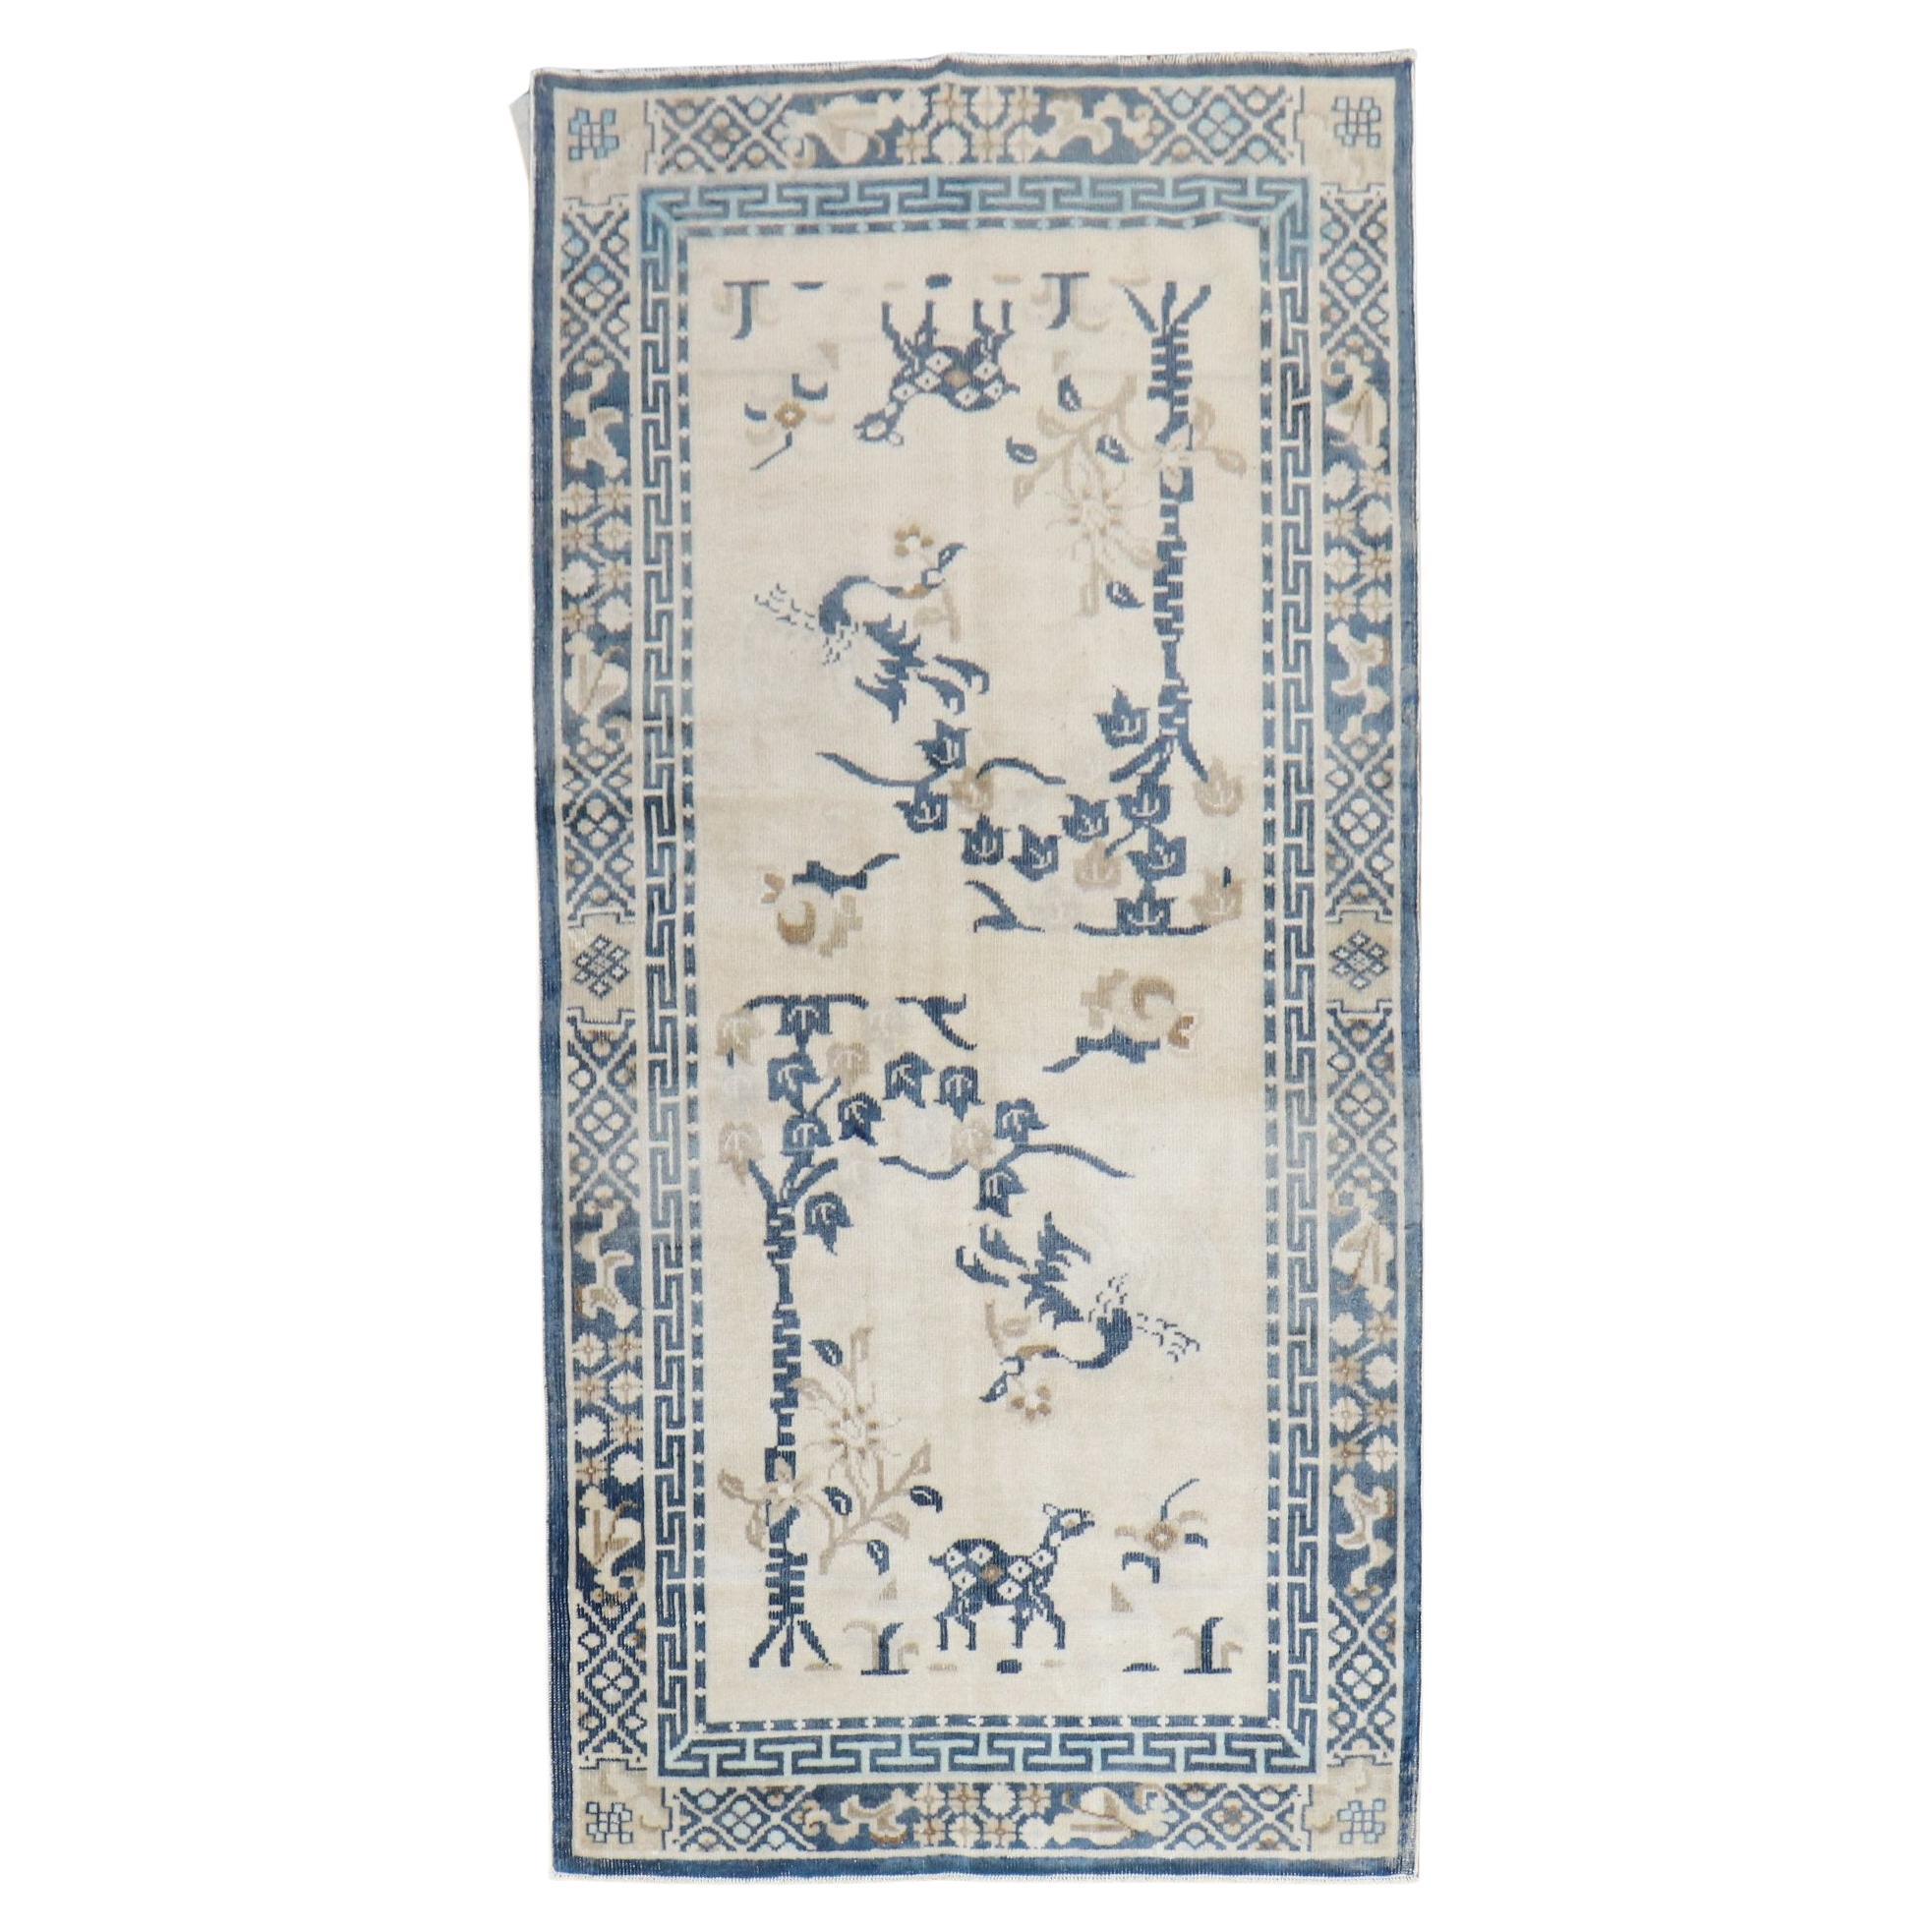 Weiß-Blauer, malerischer, antiker, chinesischer, orientalischer Teppich